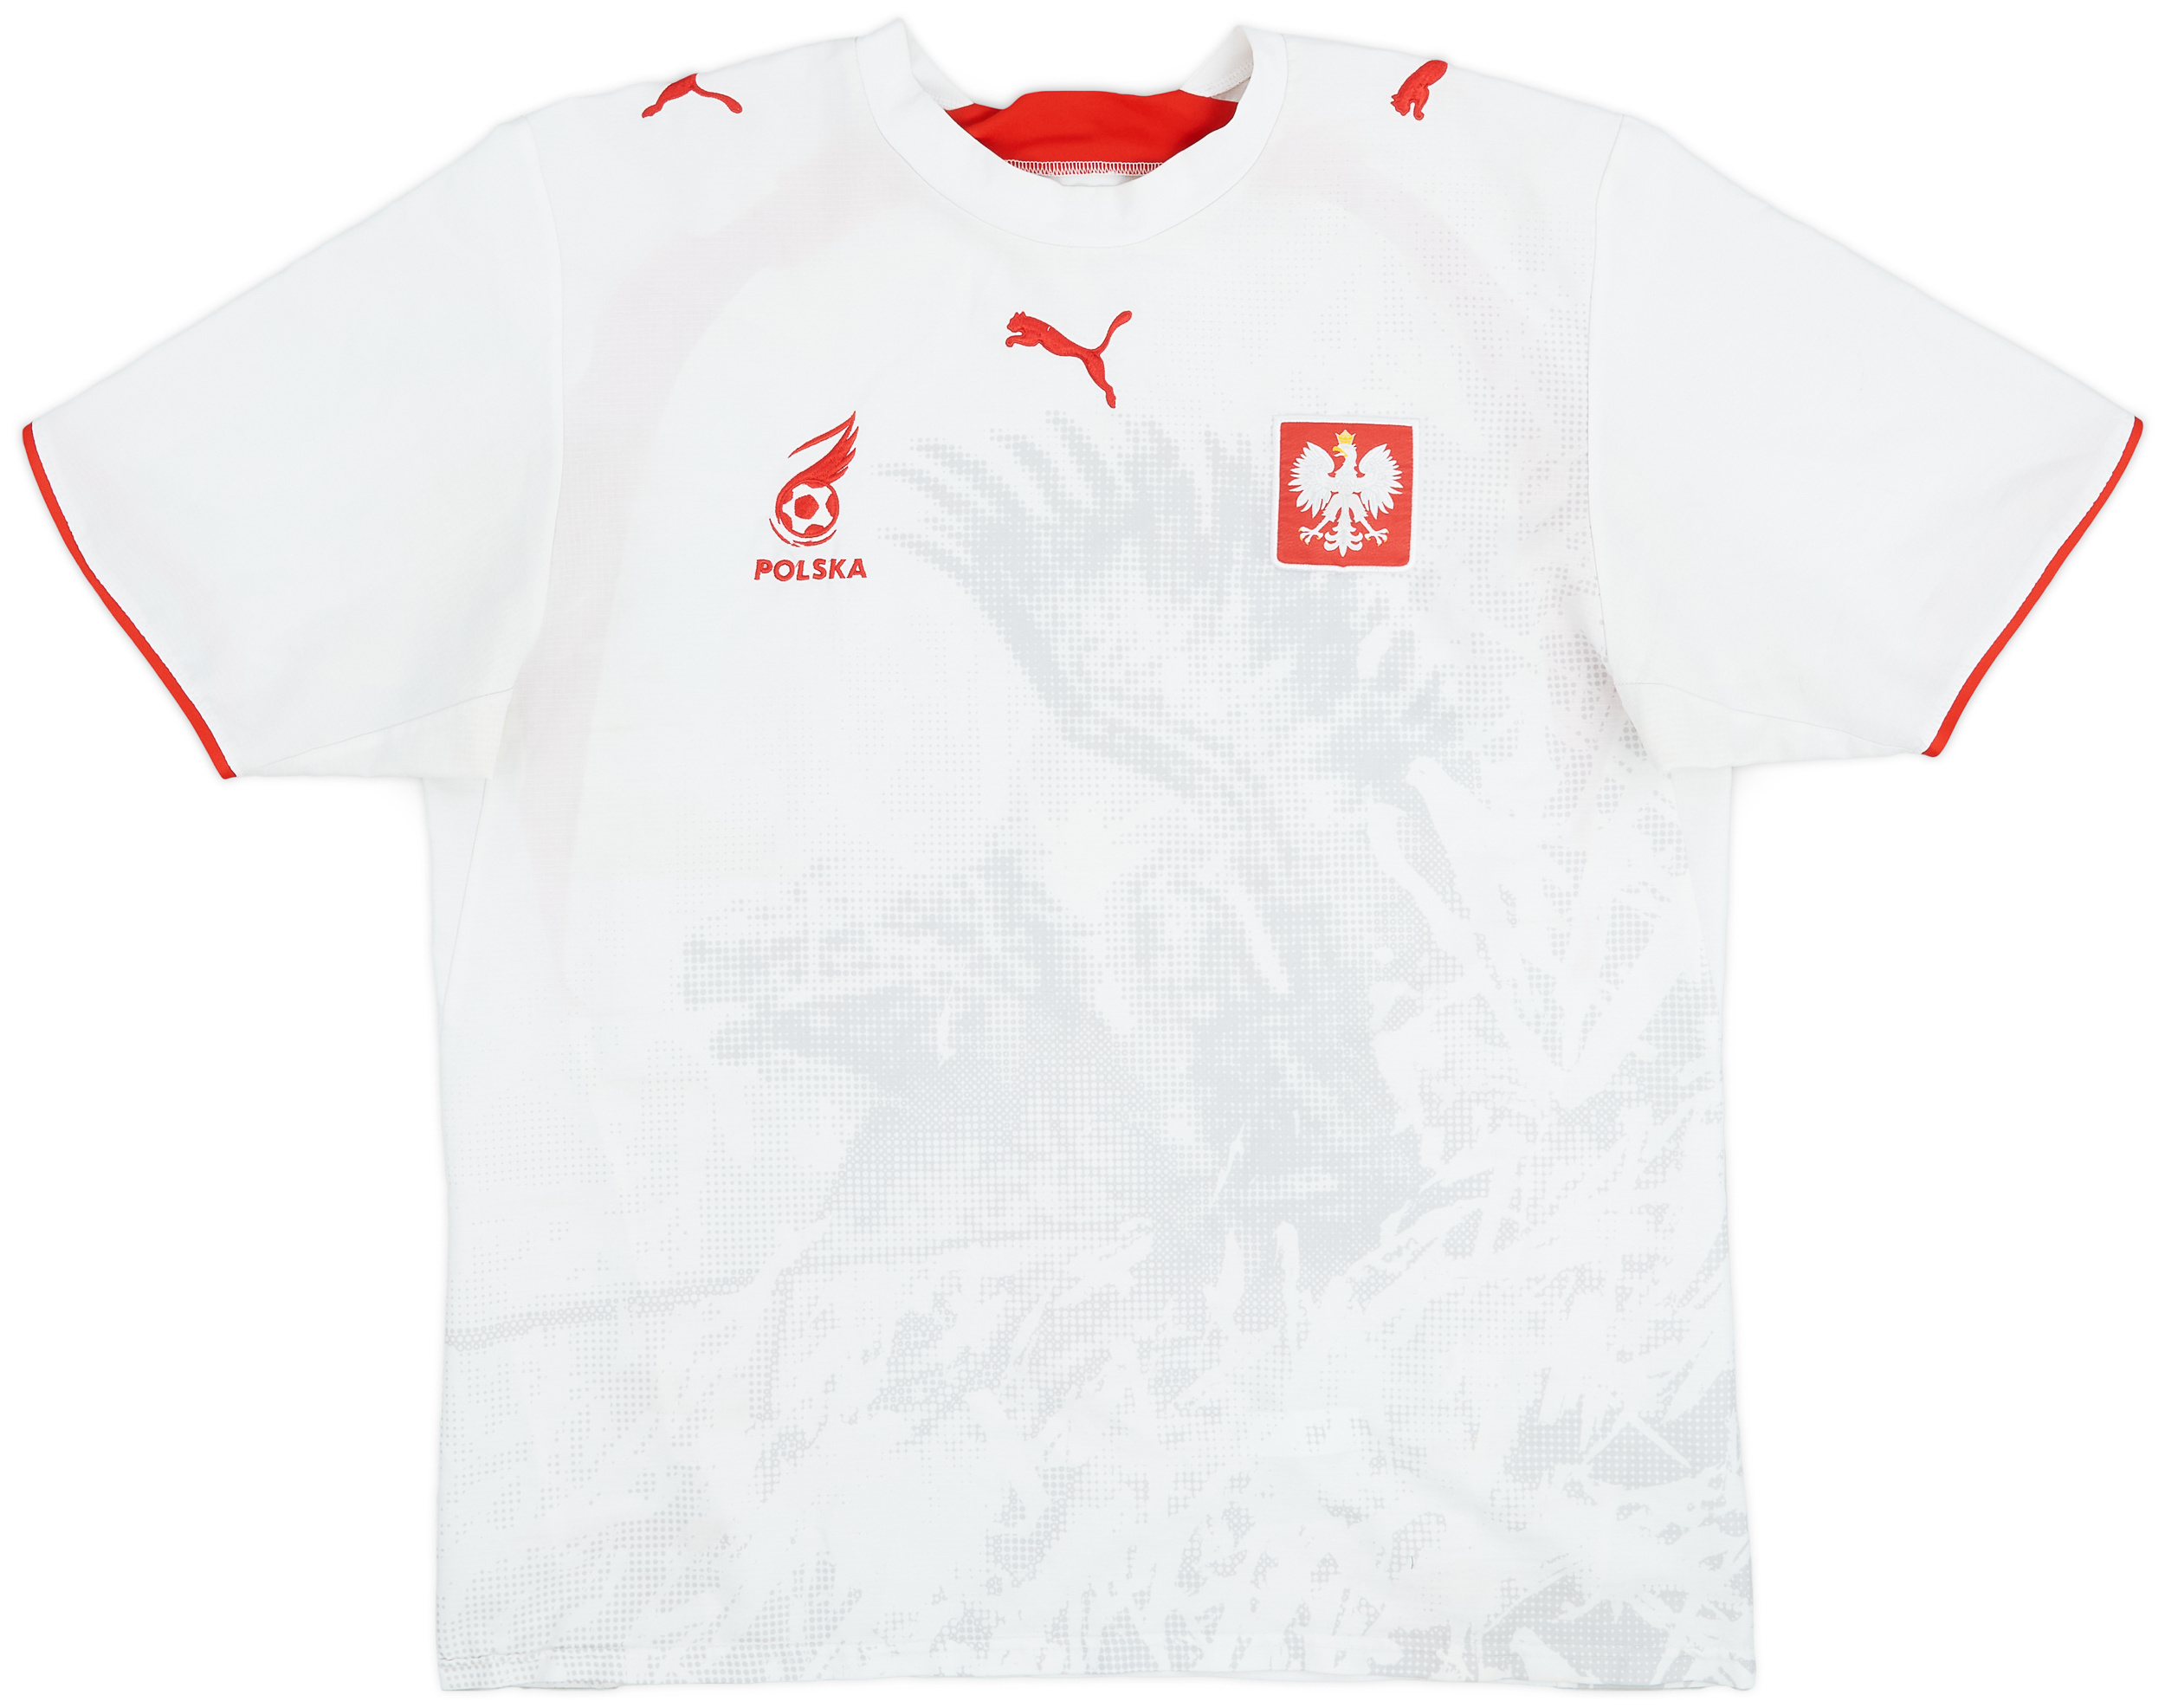 2006-08 Poland Home Shirt - 6/10 - ()